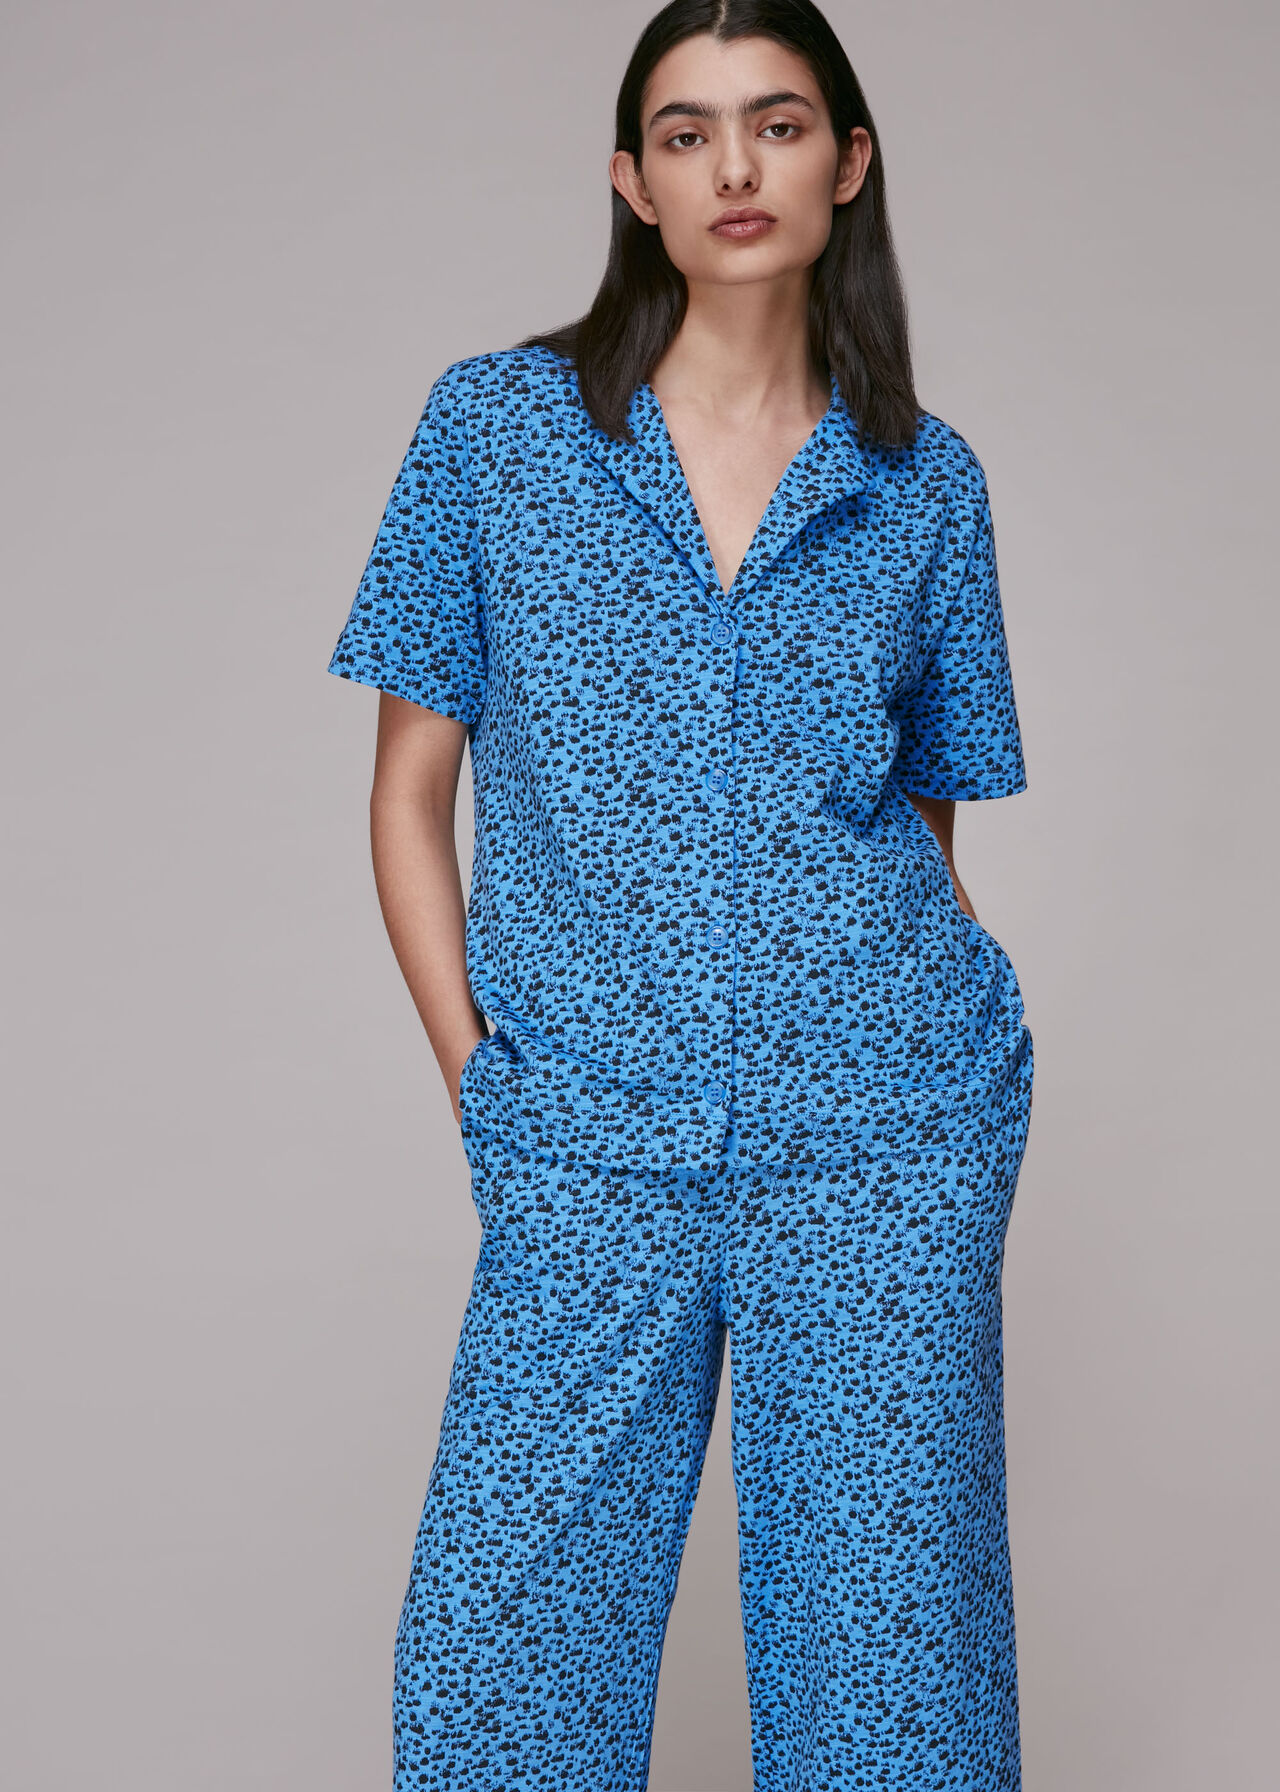 Brushmark Animal Print Pyjamas